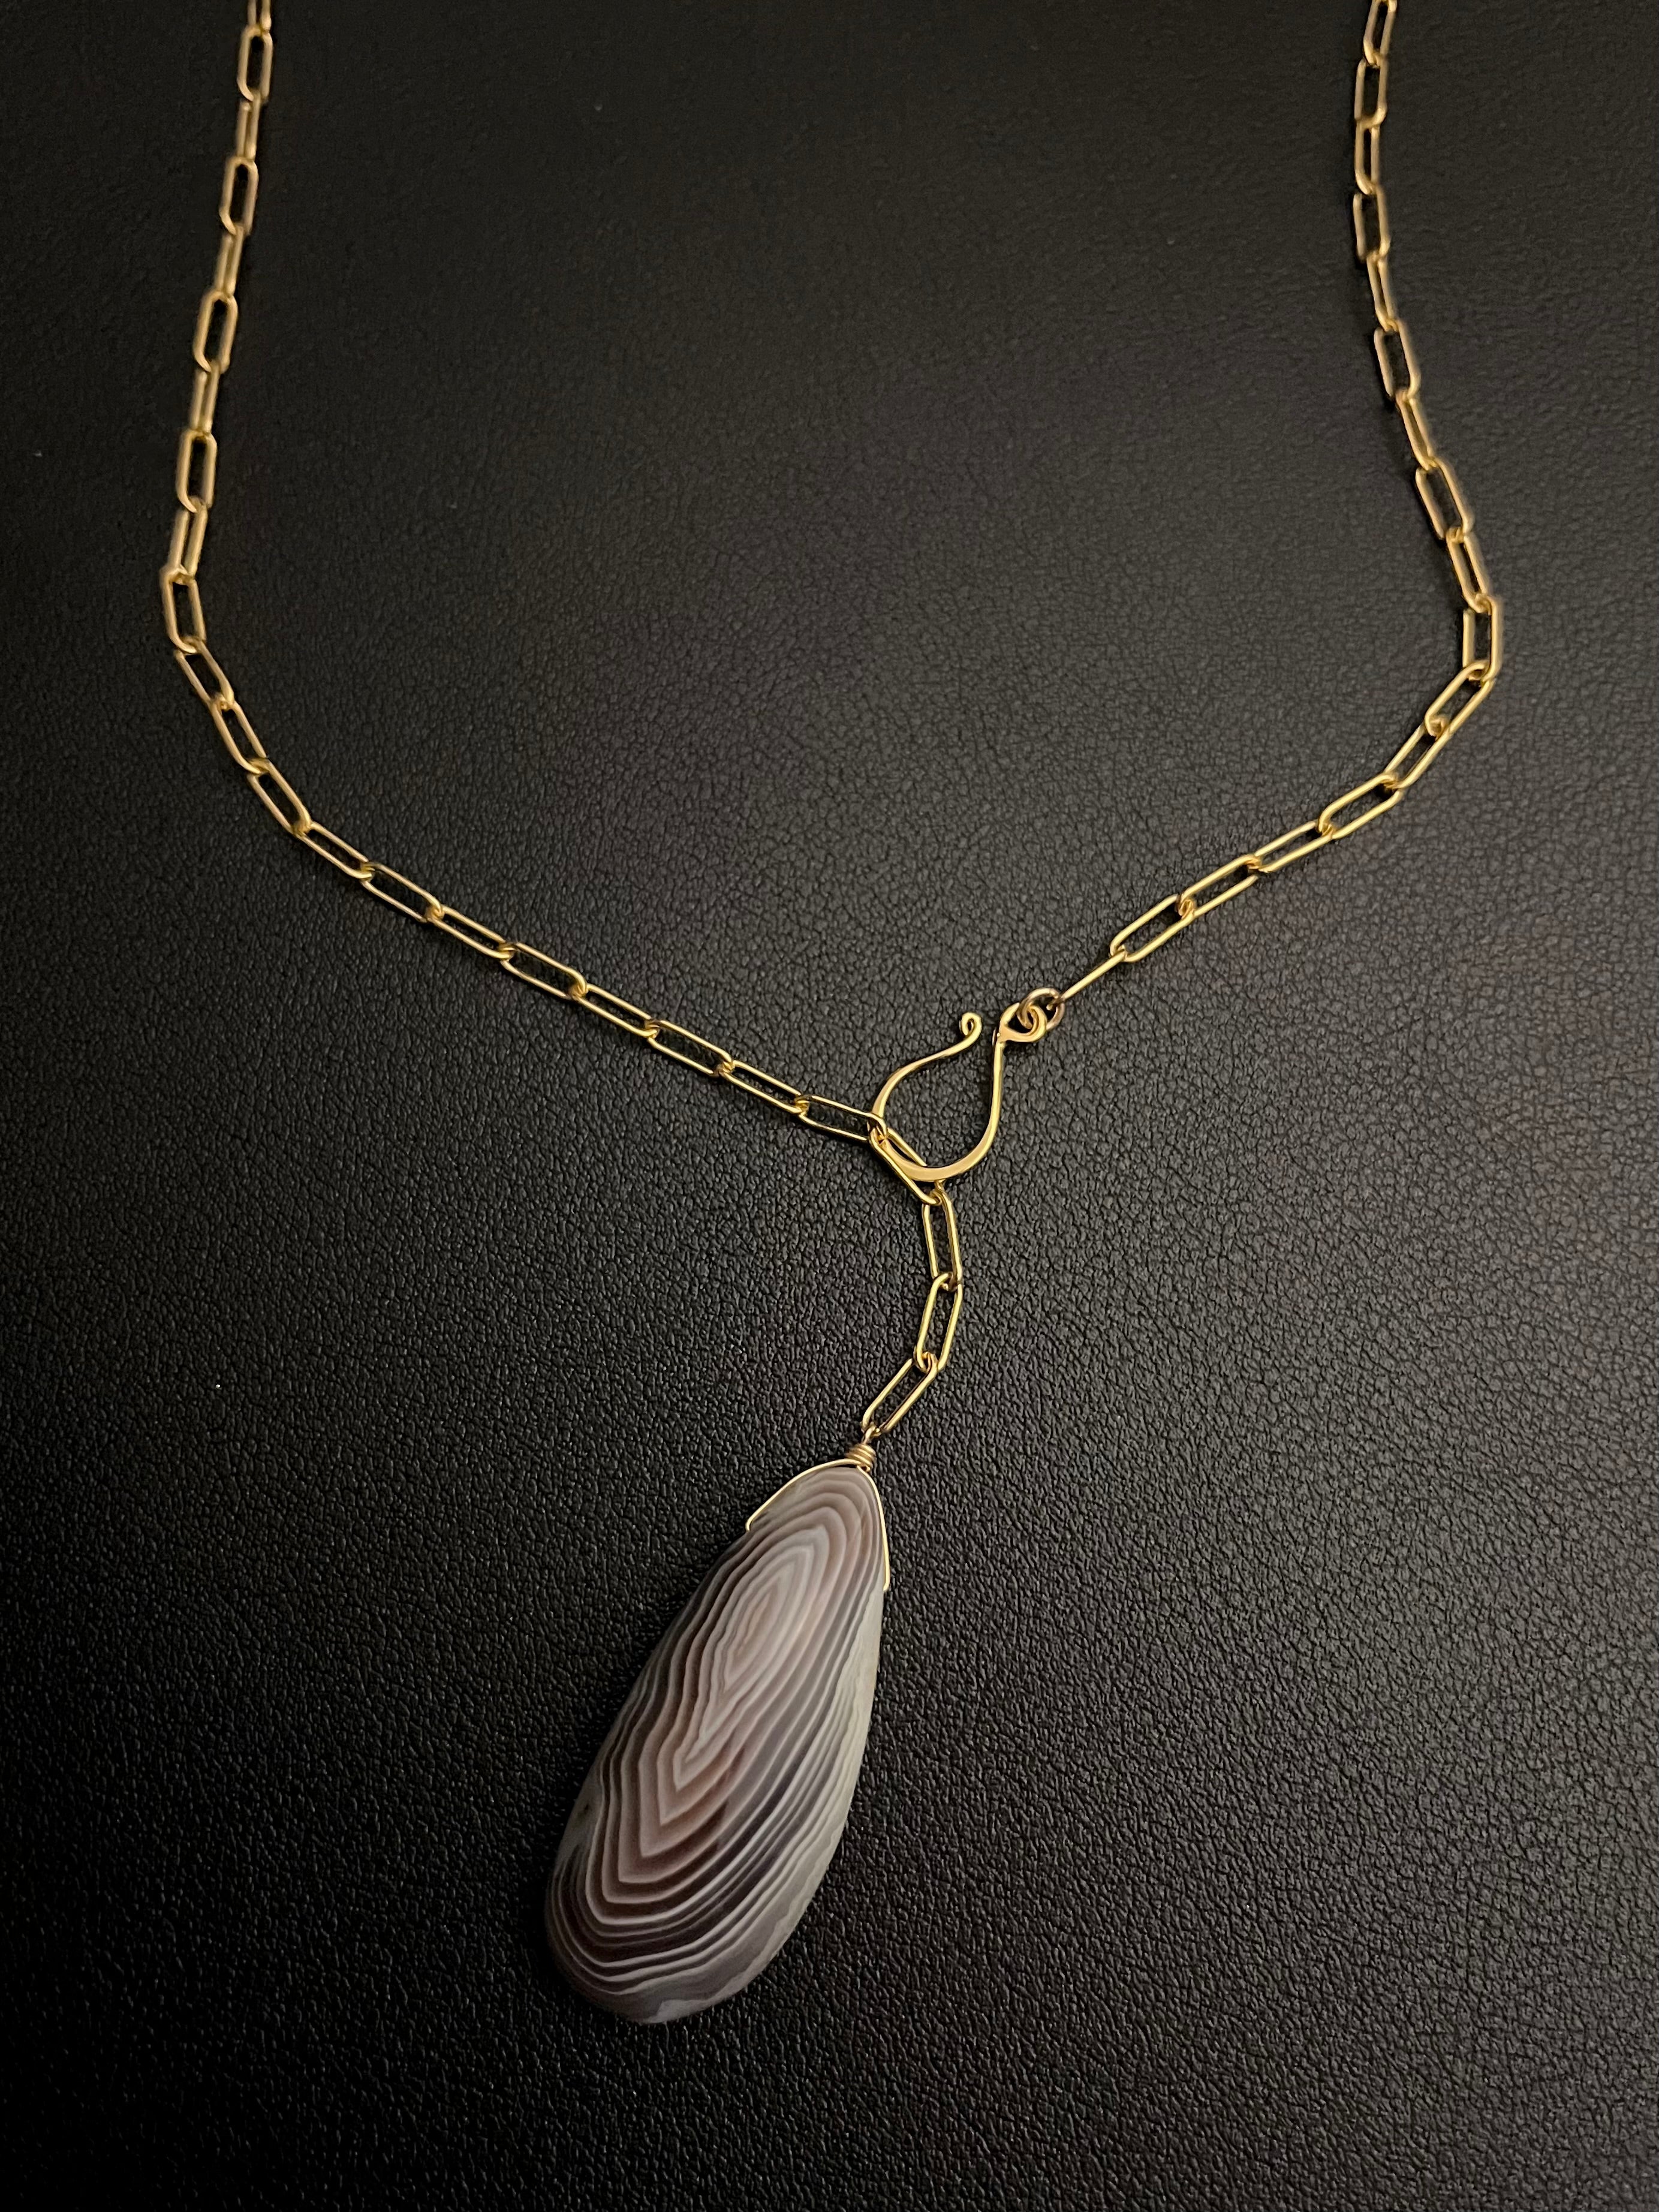 •LINKED• botswana agate + gold necklace (19")